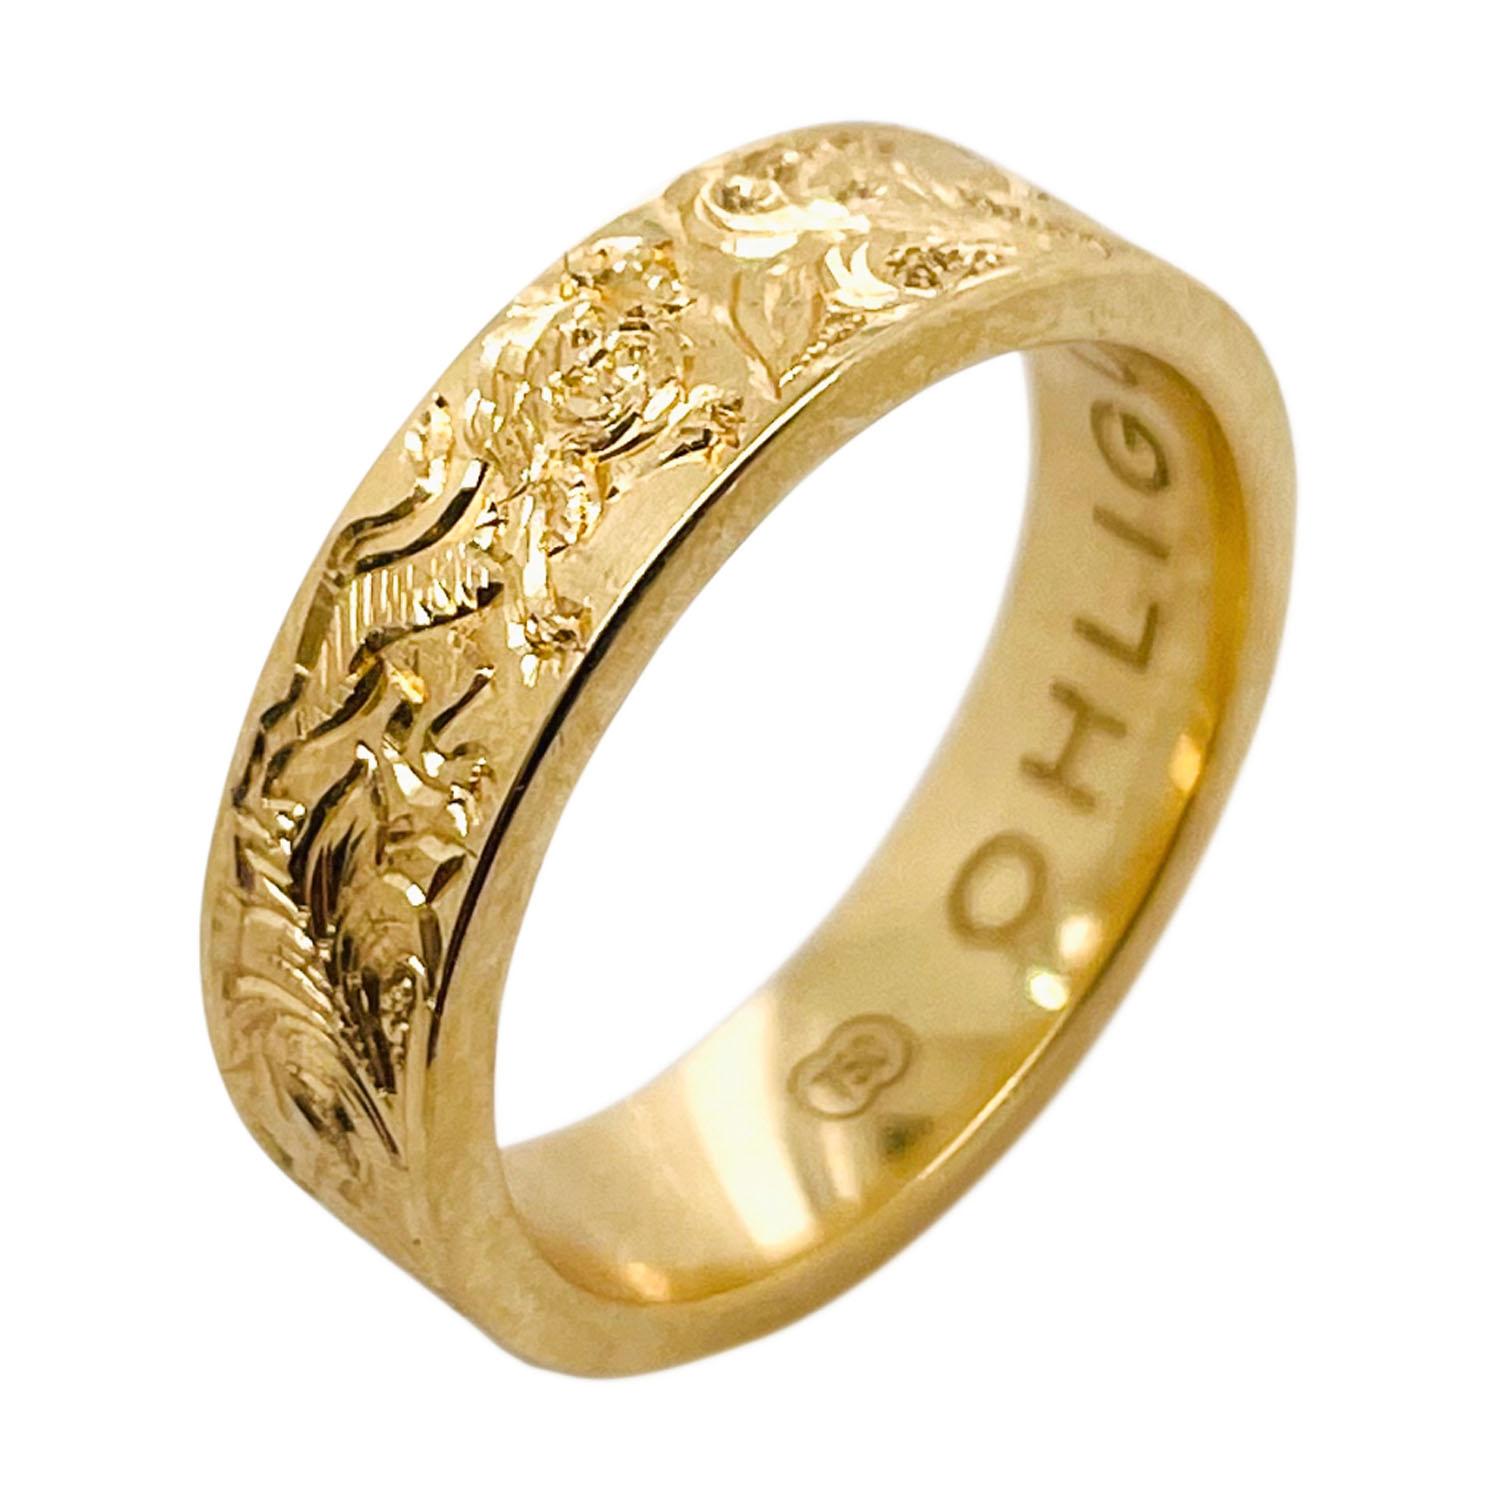 Ring aus 22 Karat Gelbgold mit Handgravur 

Gravierter Ring mit mythischem Einhorn und Löwe, inspiriert von einer alten Gravur 

 Wir passen die Gravur an, wenn Sie ein anderes Design bevorzugen, kontaktieren Sie bitte unseren Designer

5 mm breites